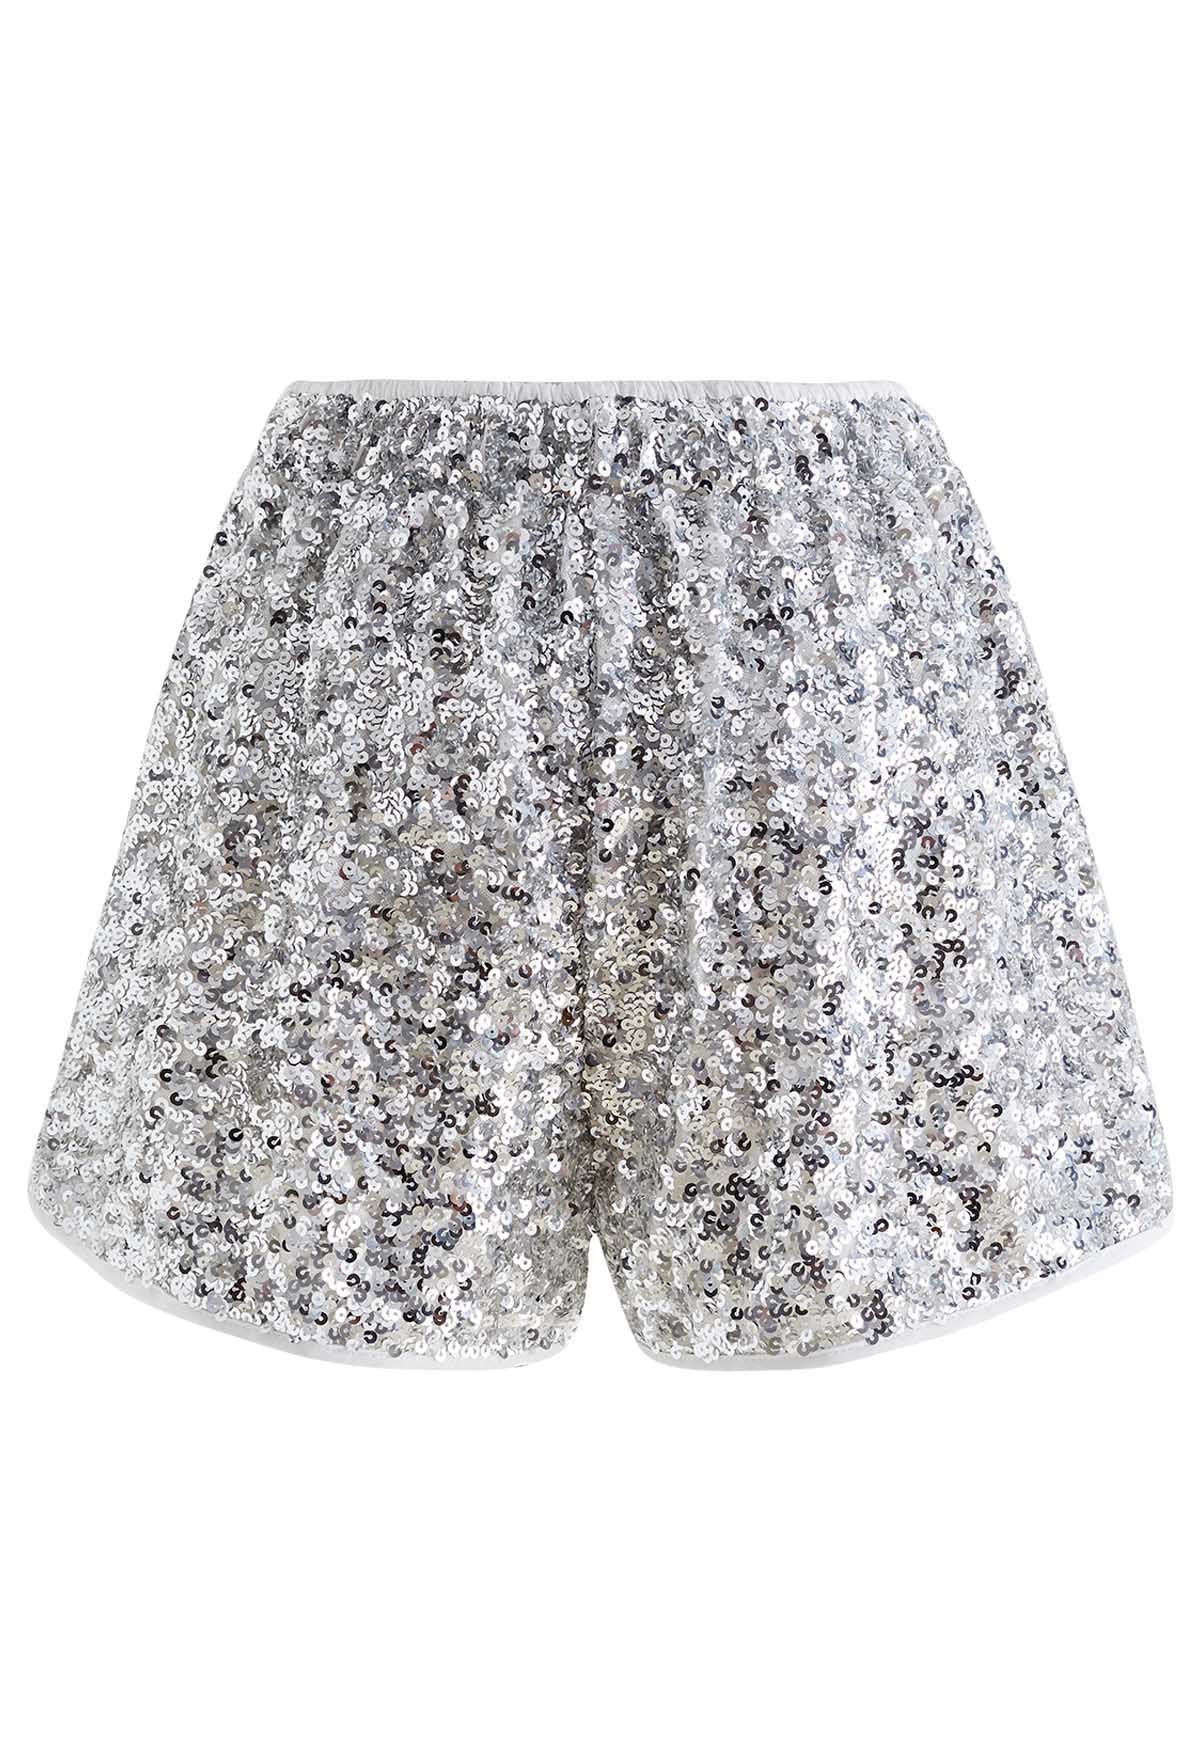 Shorts completos con adornos de lentejuelas en plata